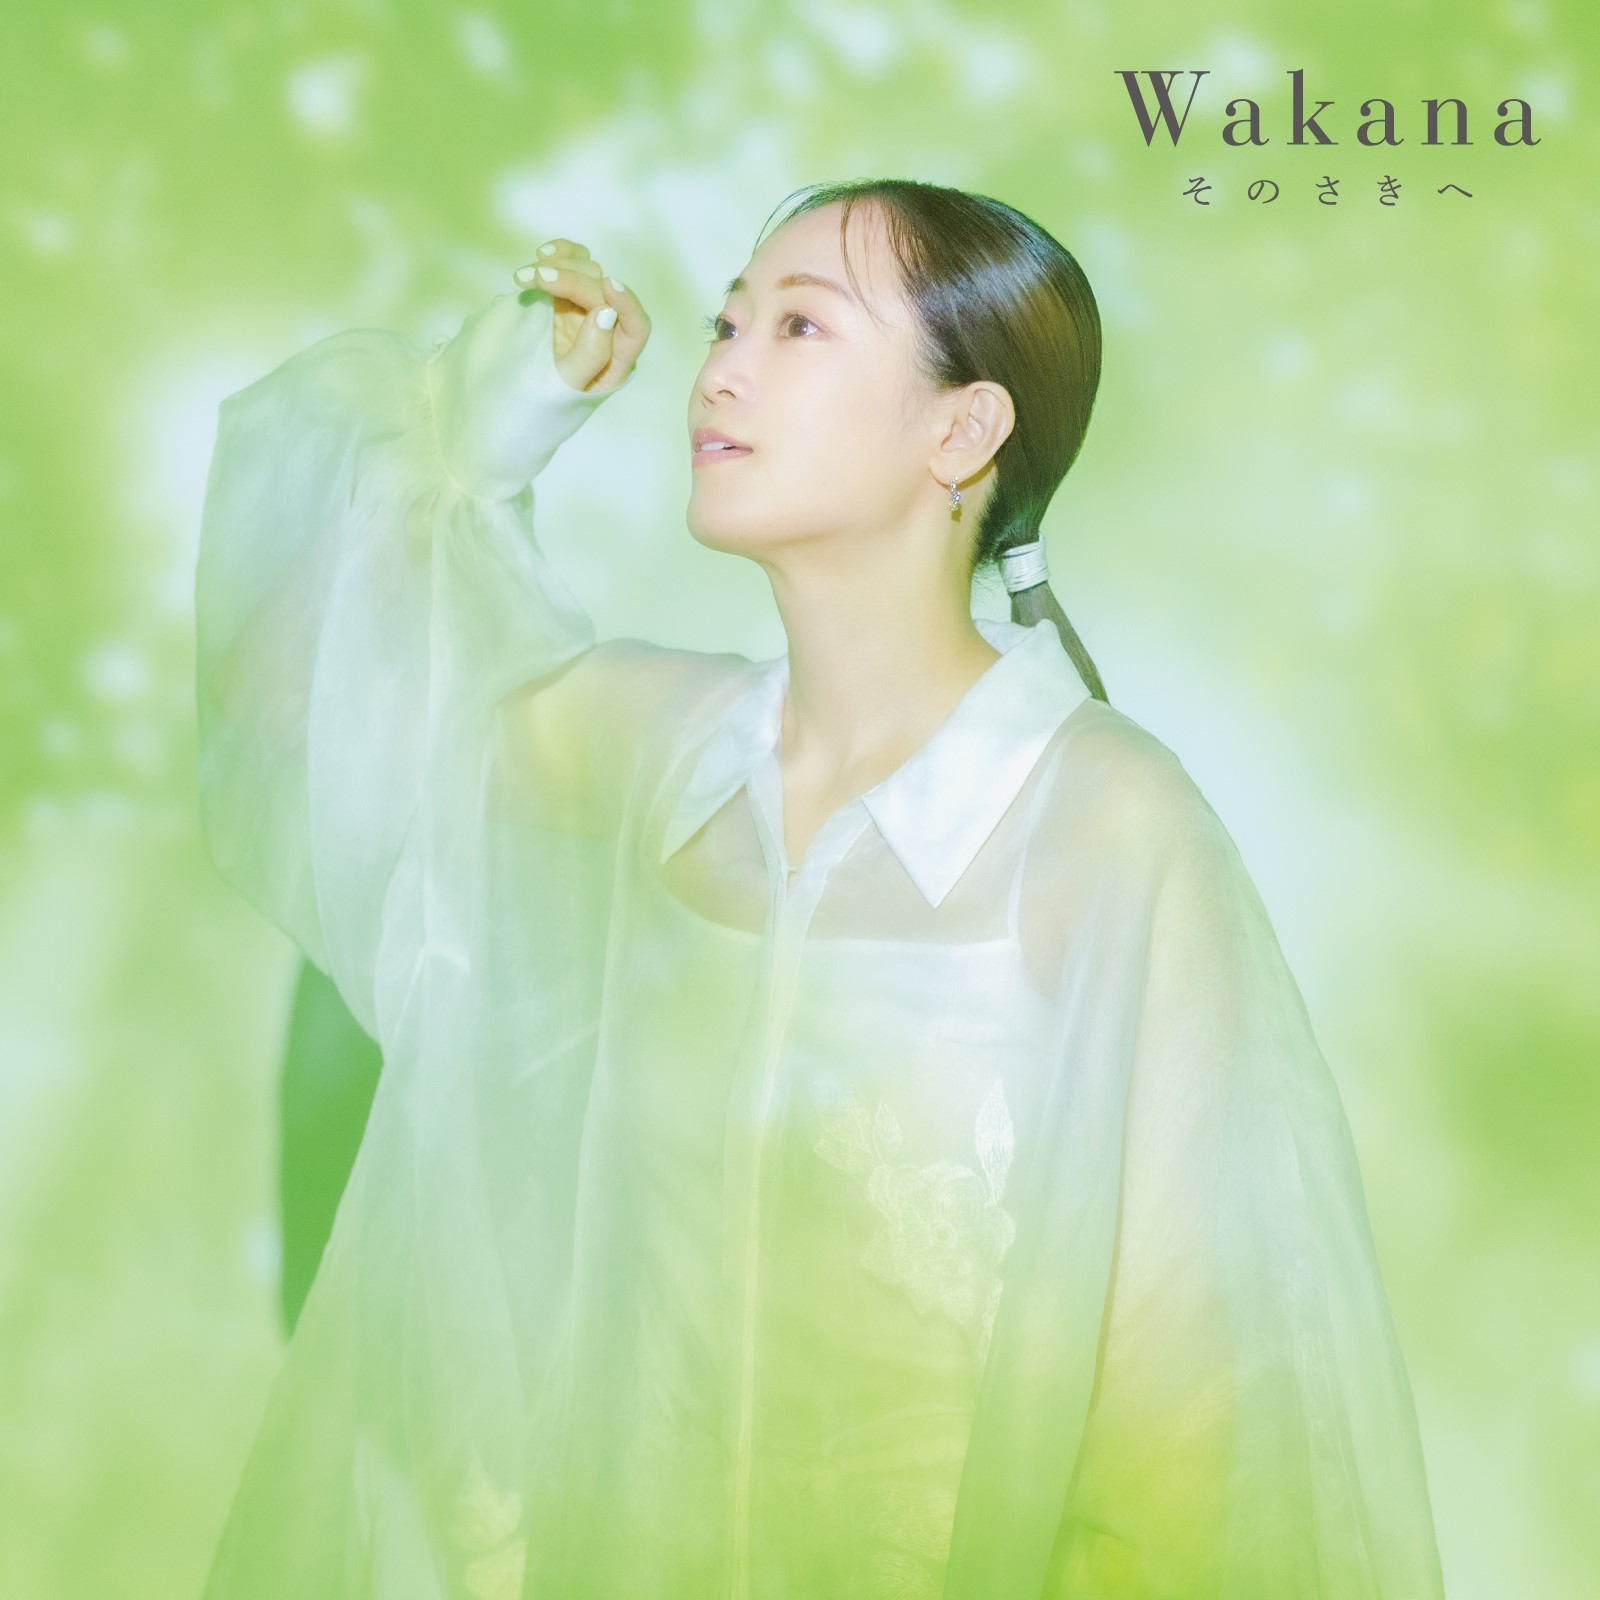 Wakana オリジナル3rdアルバム『そのさきへ』通常盤